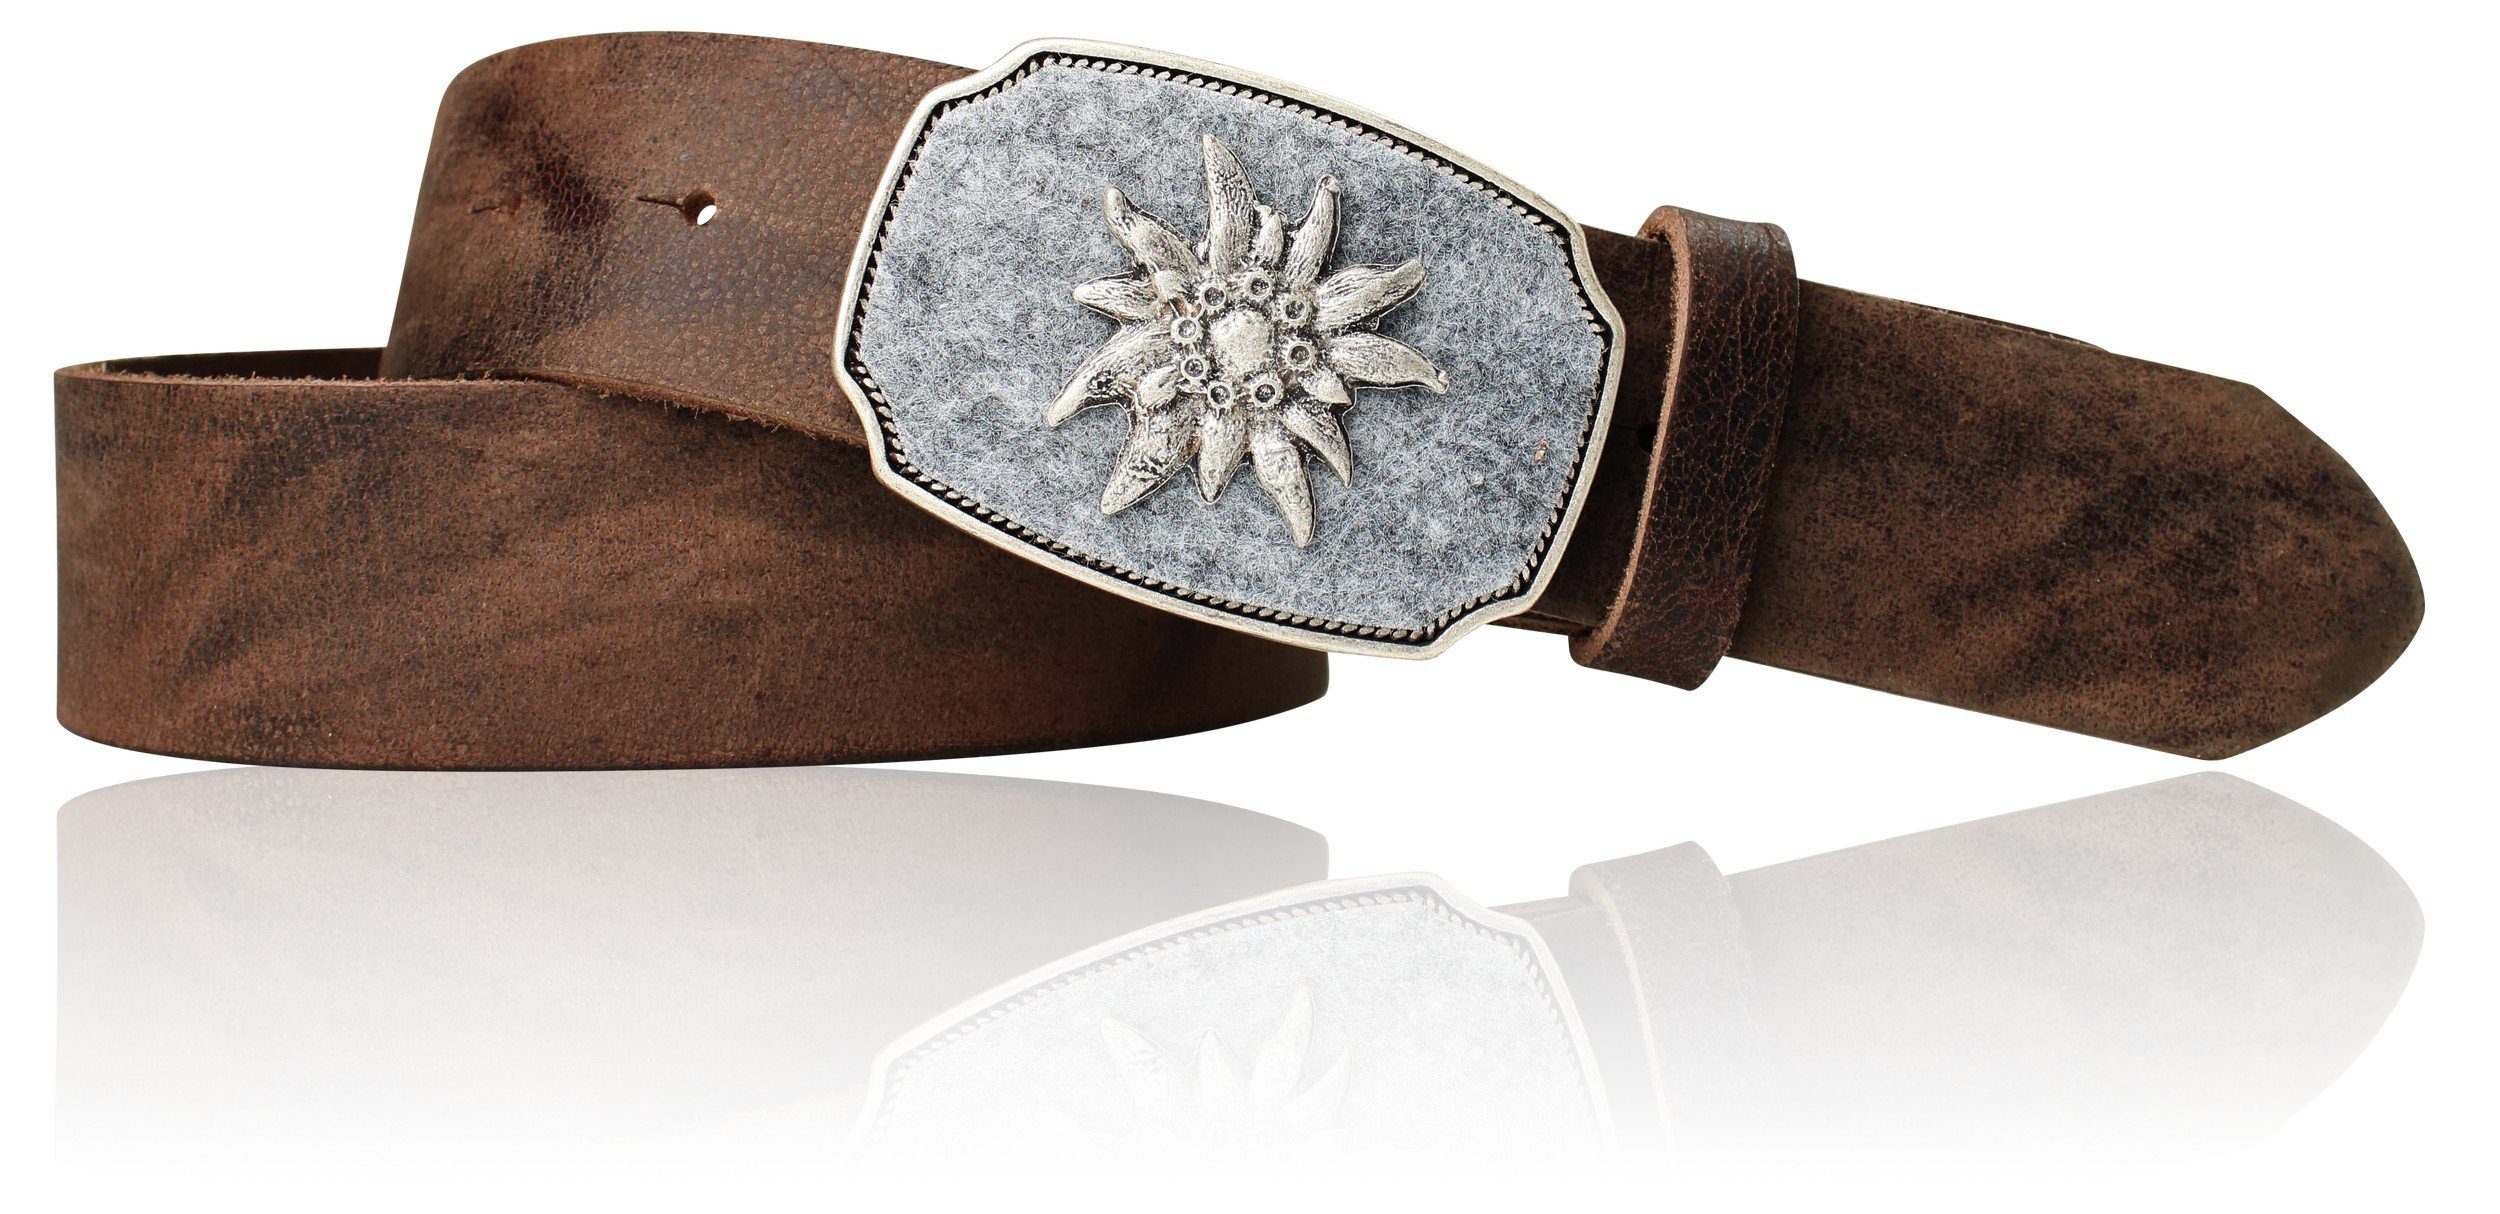 FRONHOFER Ledergürtel 18810 mit Trachtengürtel Edelweiss und Schnalle Vintage-braun Loden eingelegter